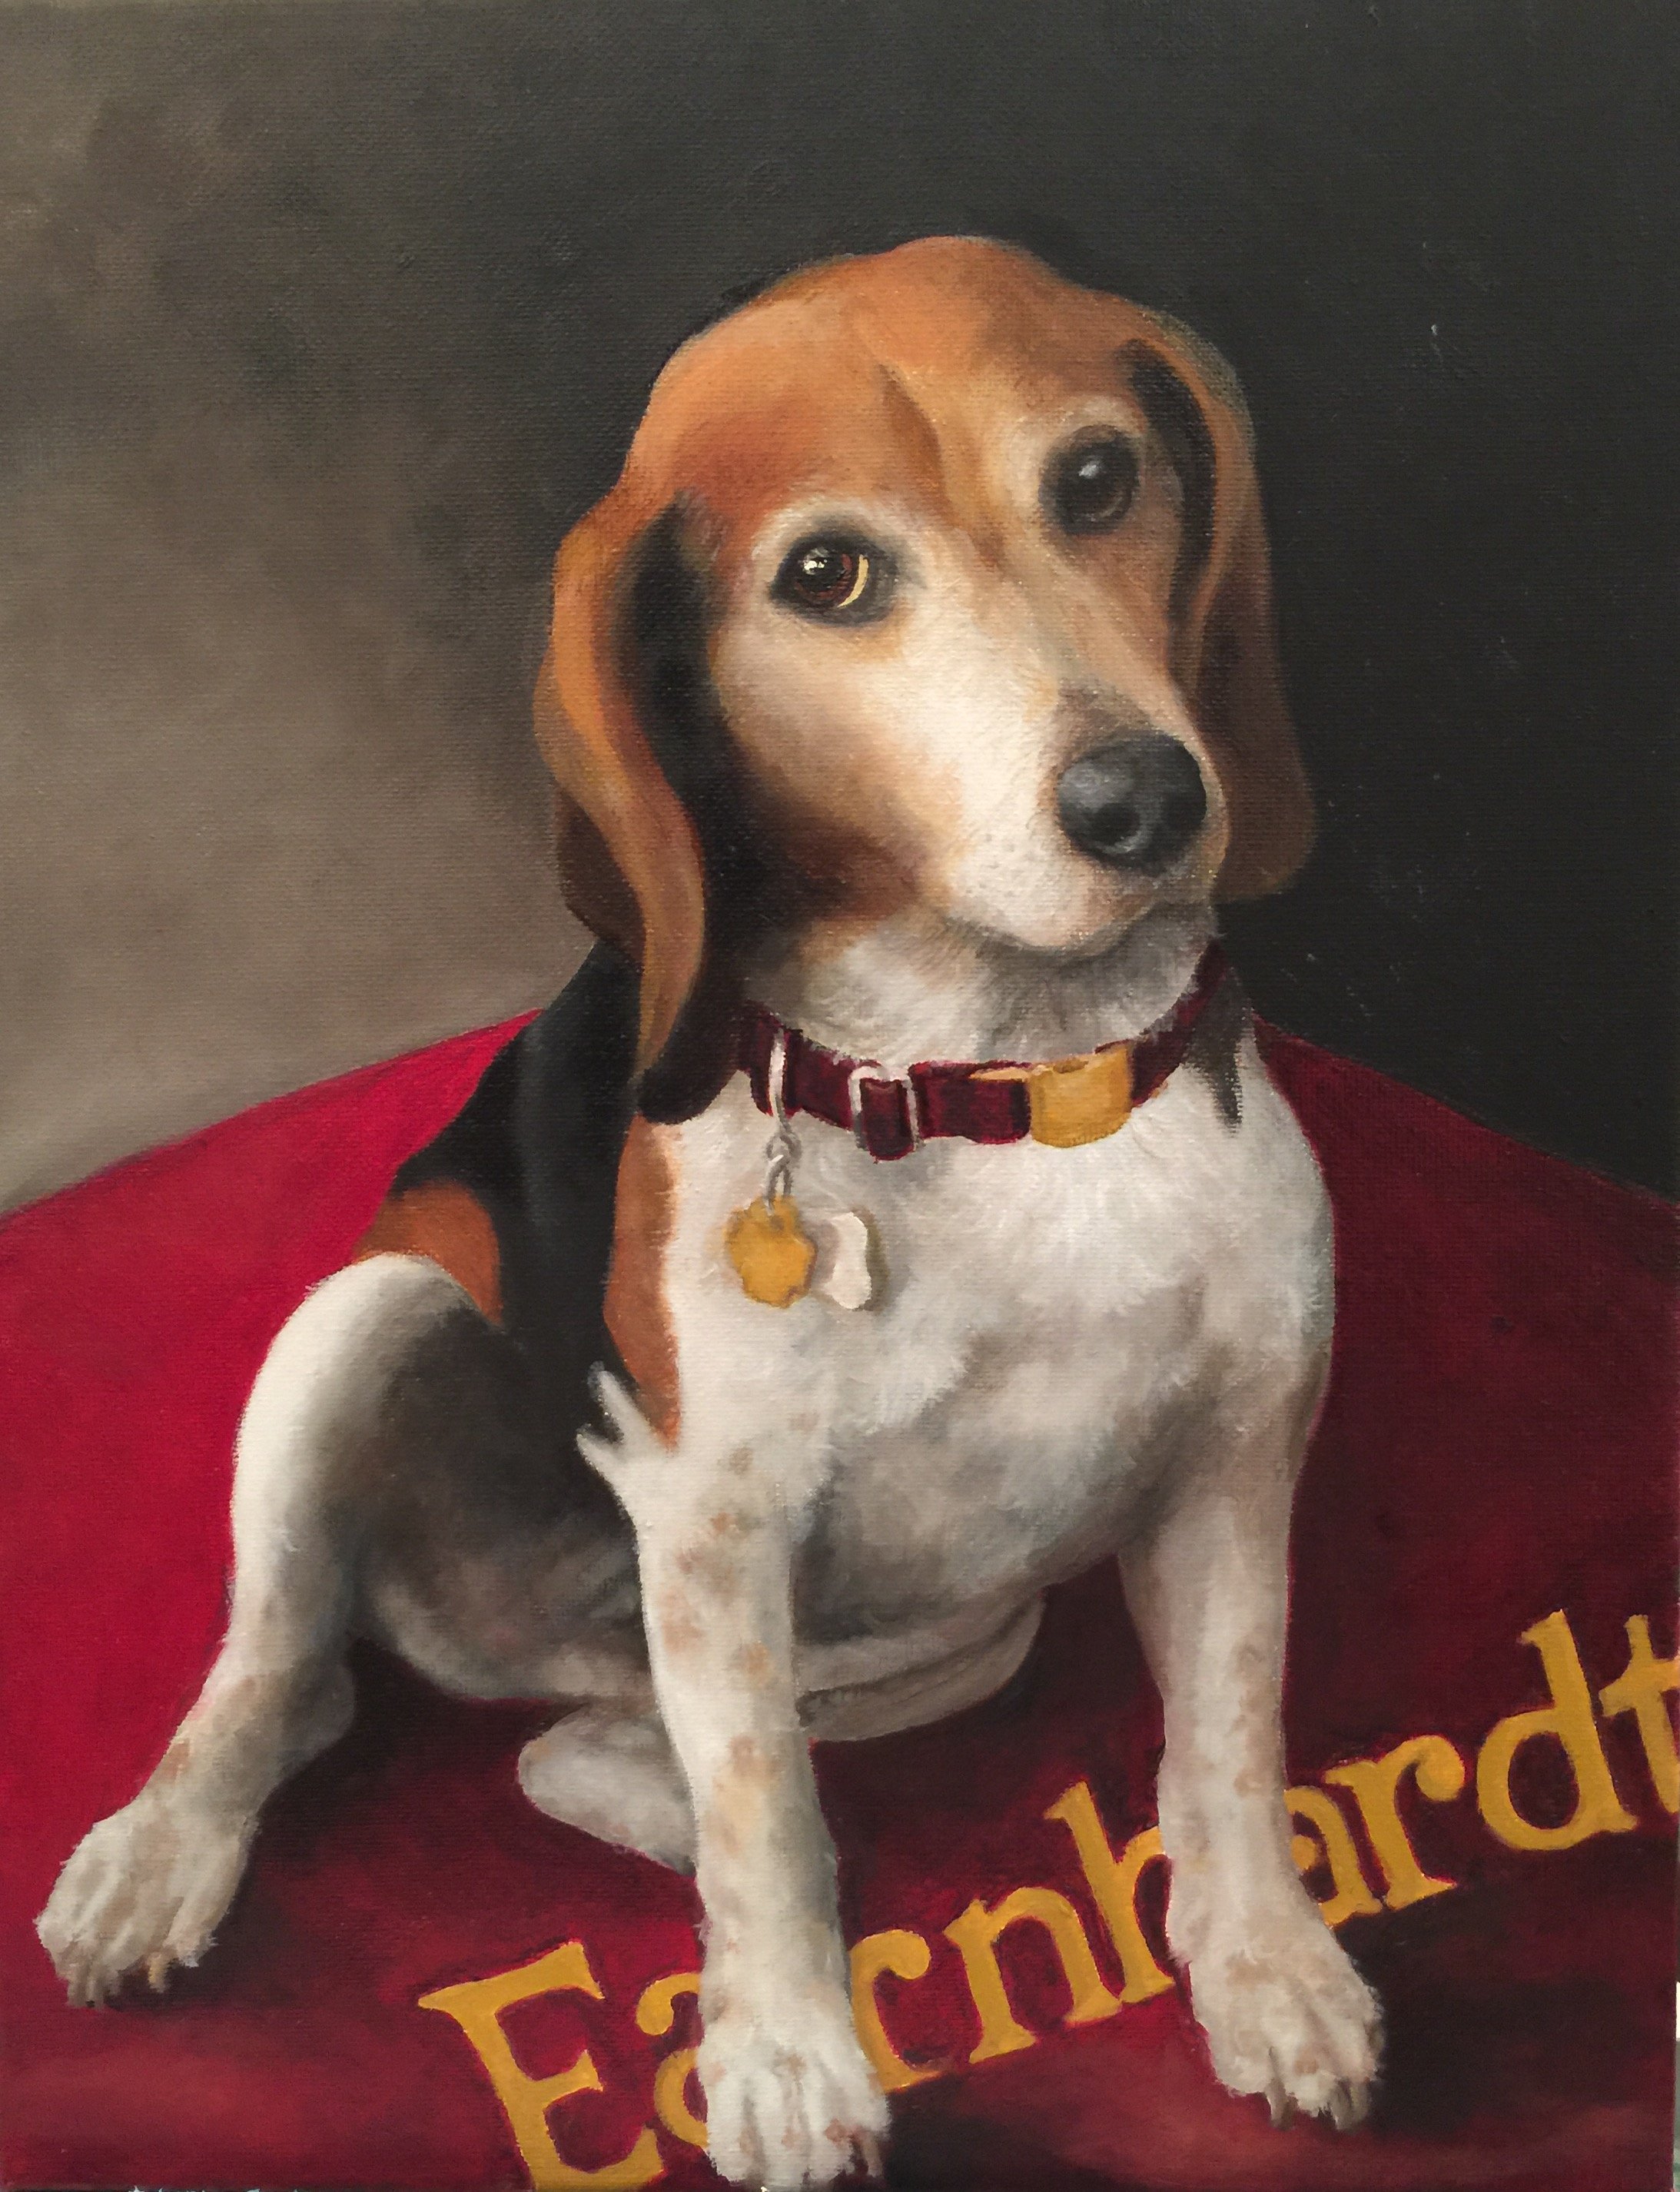 Earnhardt the Beagle